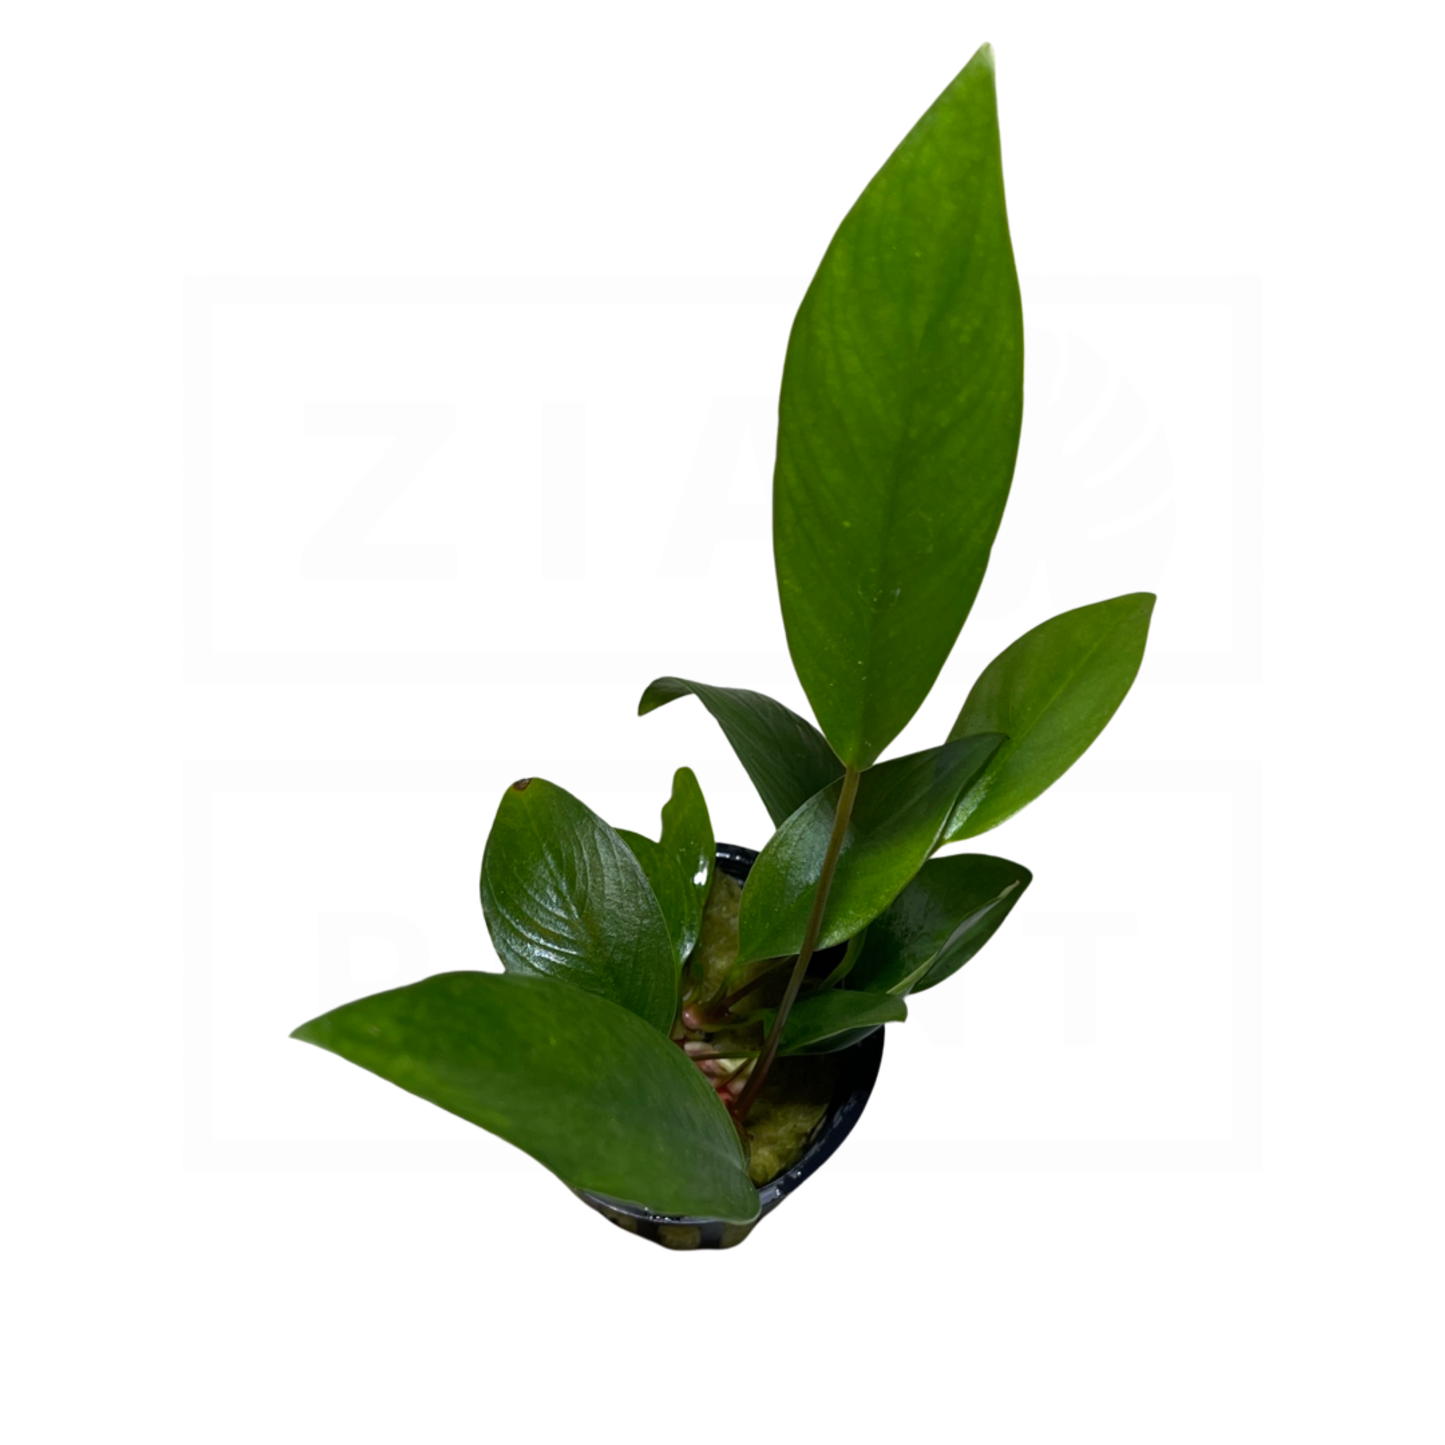 Anubias Frazeri | Easy Plant